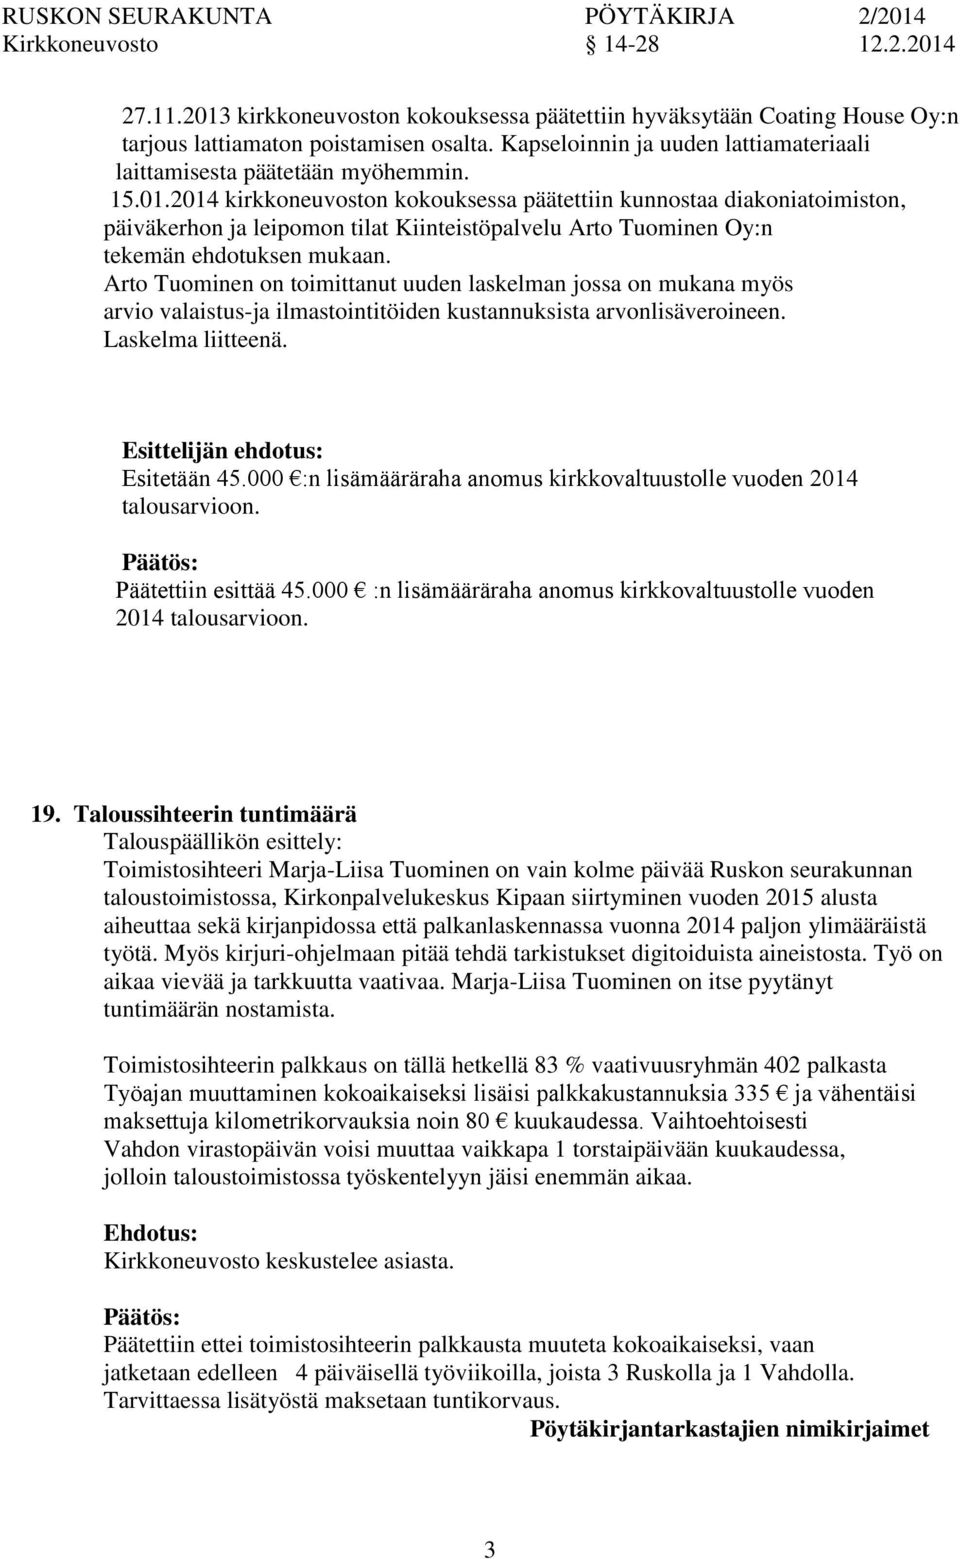 2014 kirkkeuvost kokouksessa päätettiin kunnostaa diakiatoimist, päiväkerh ja leipom tilat Kiinteistöpalvelu Arto Tuominen Oy:n tekemän ehdotuksen mukaan.